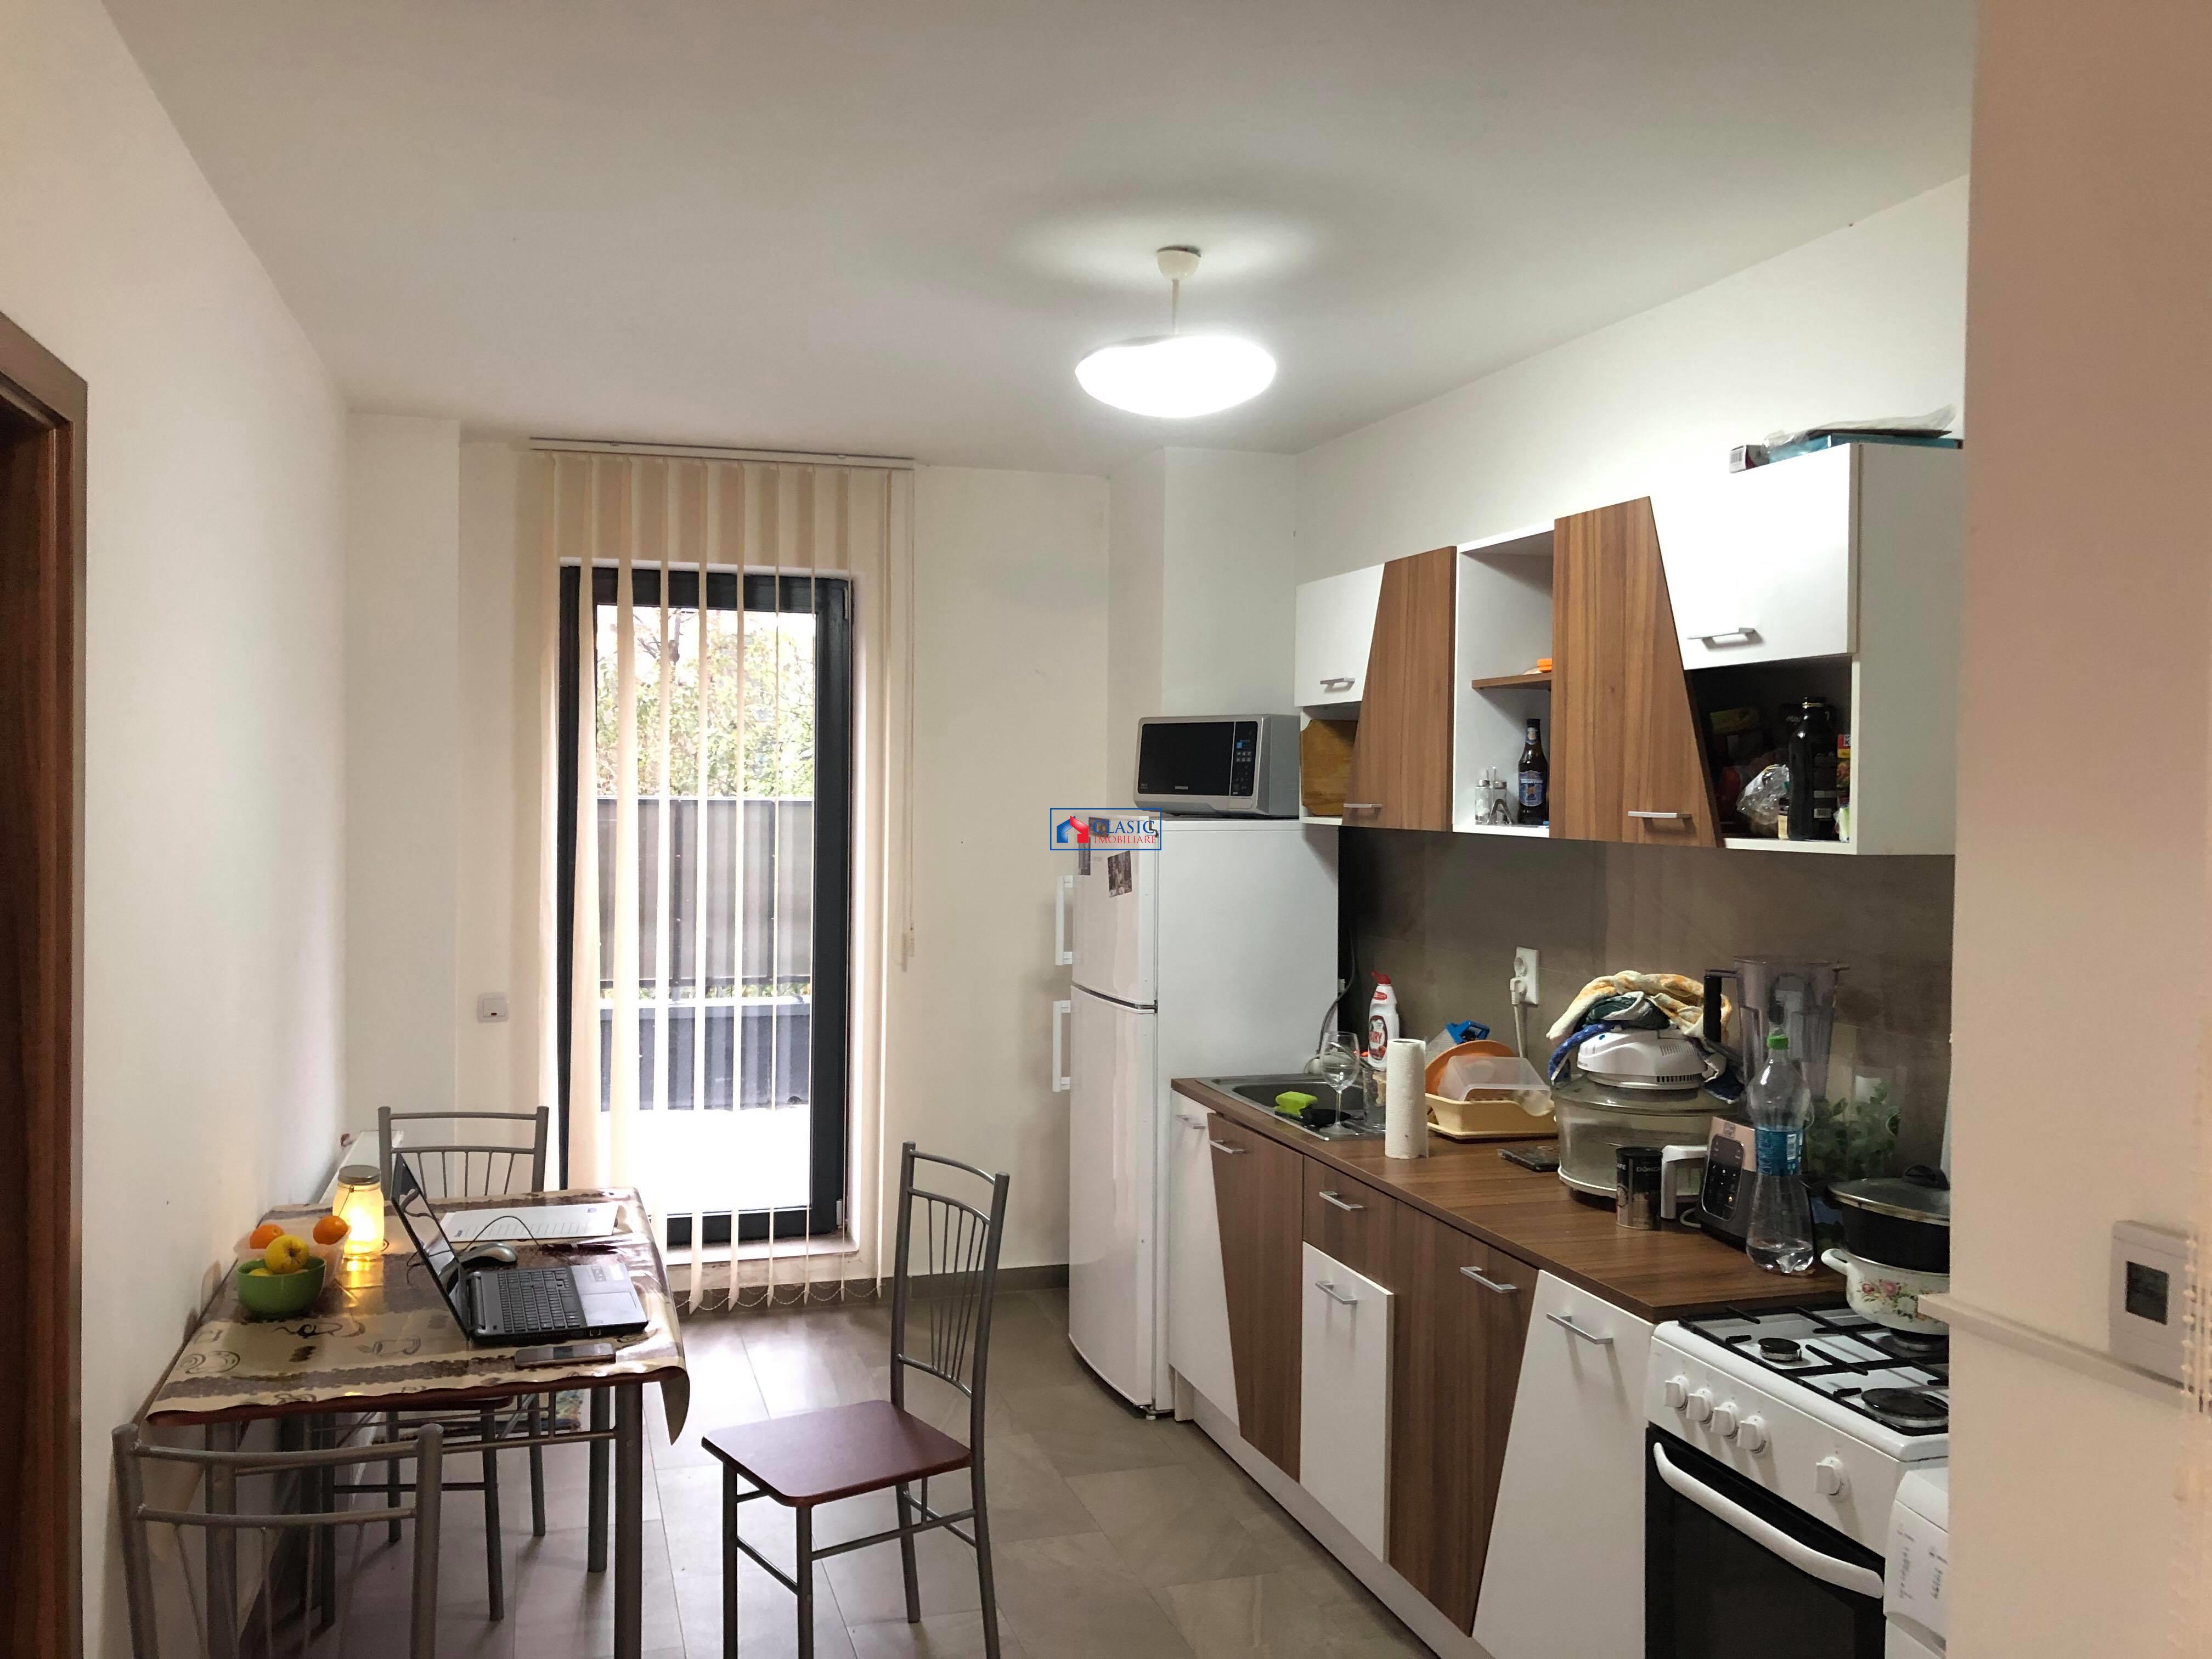 Vanzare apartament 2 camere decomandat bl nou in Marasti, terasa 85 mp